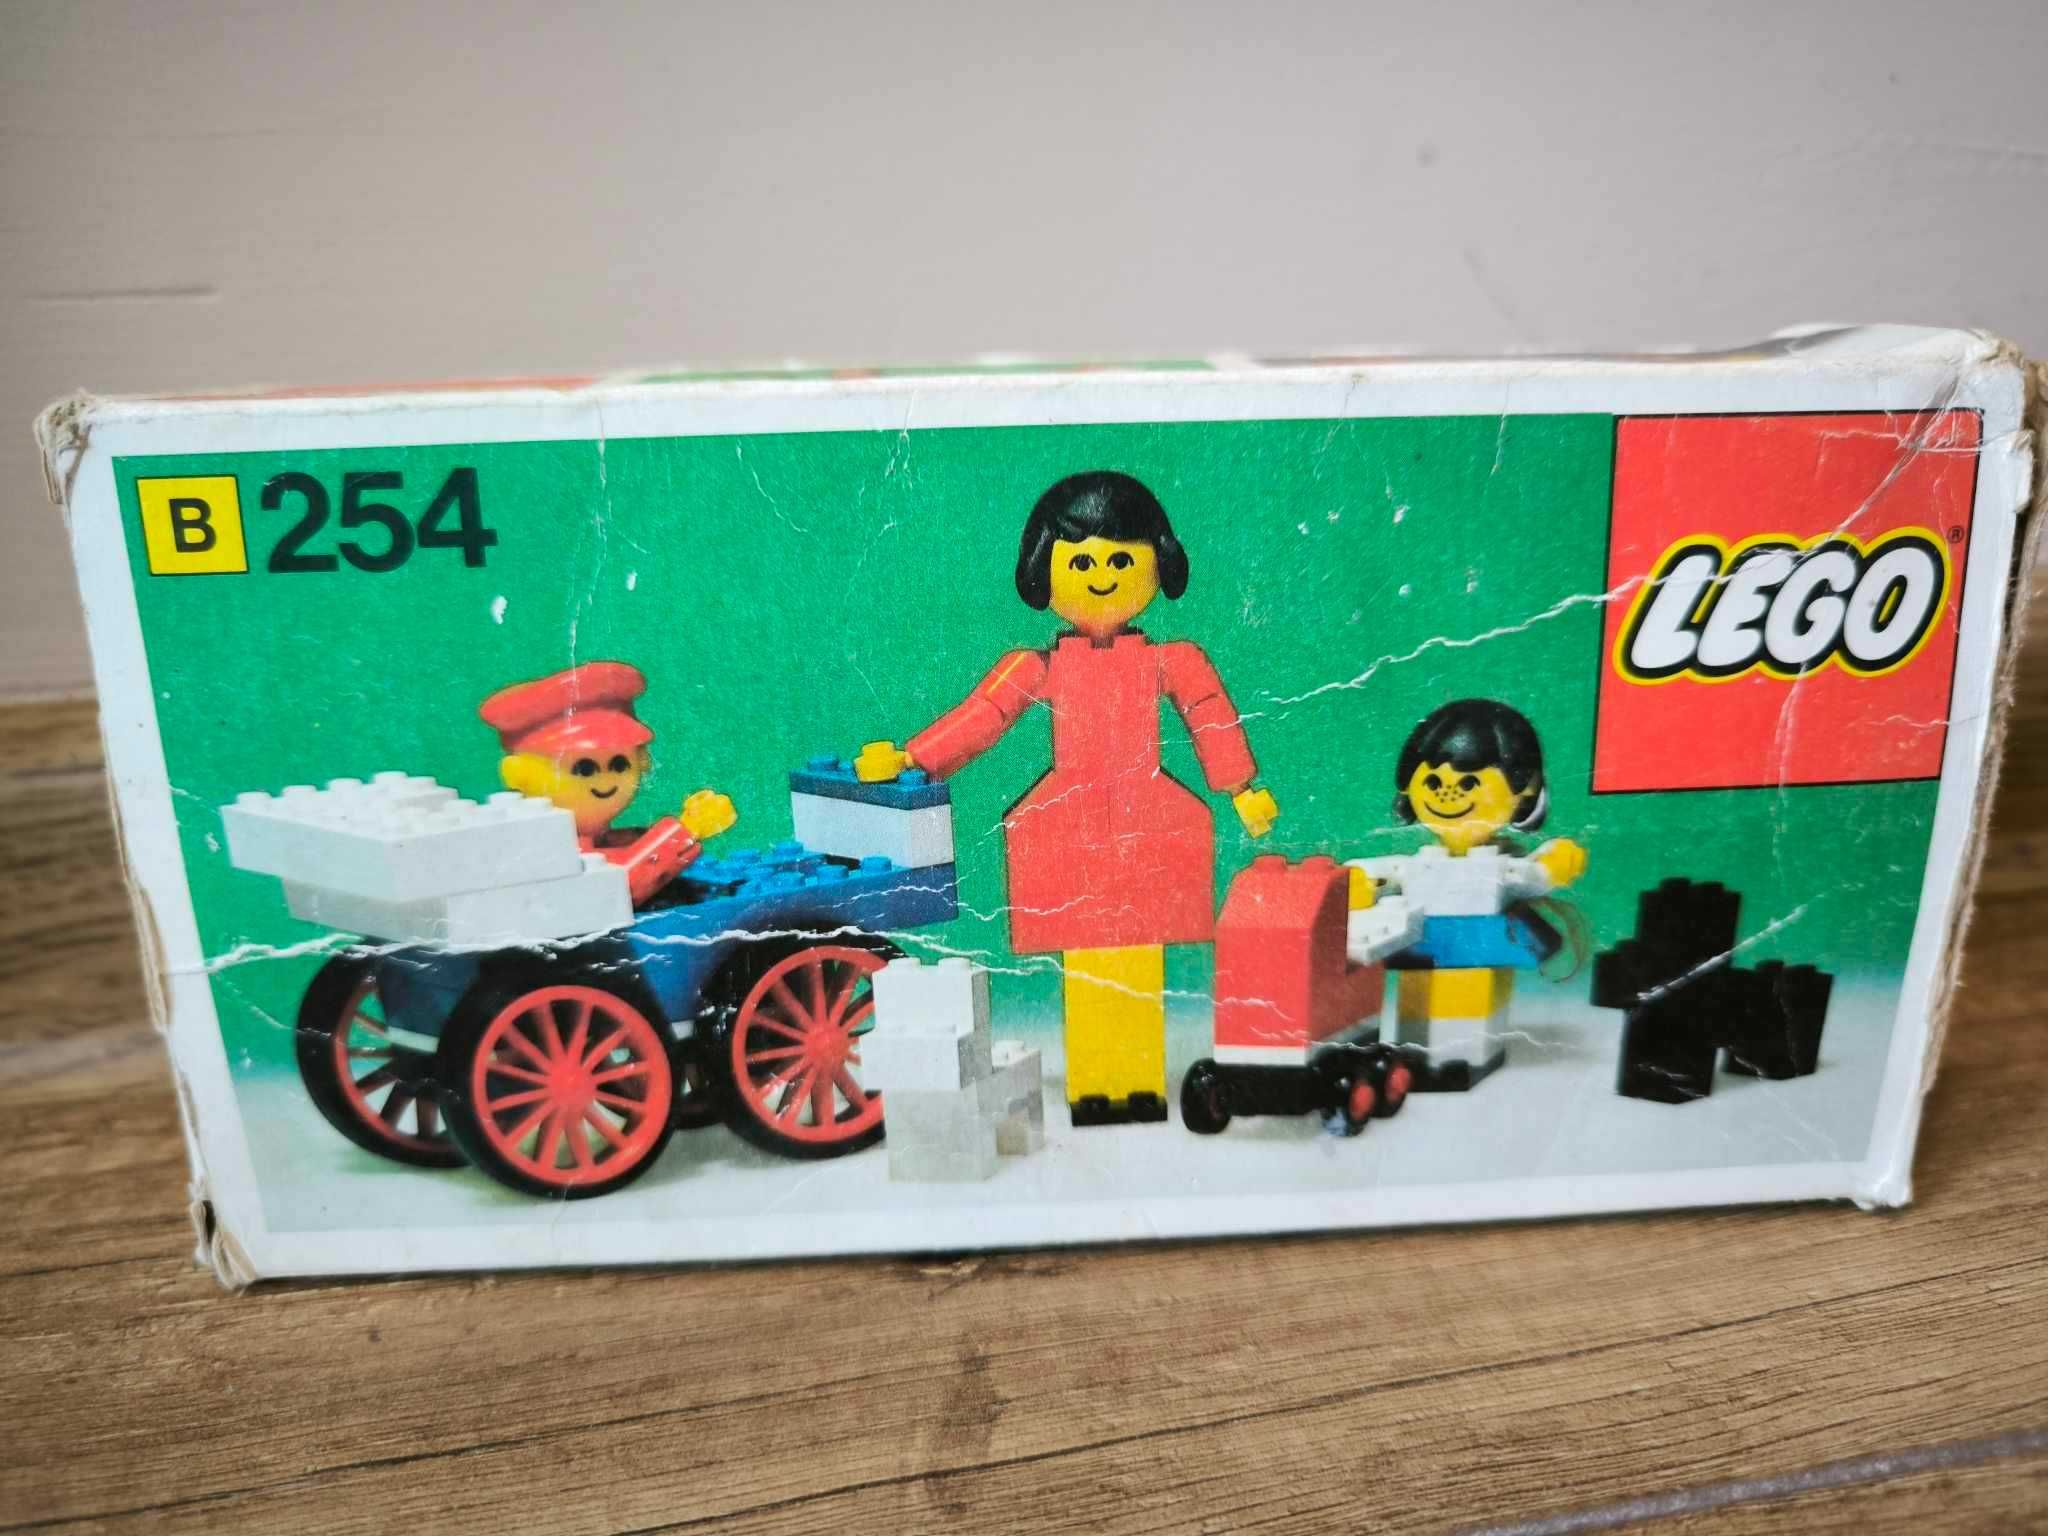 Lego homemaker 254 ,,Family"